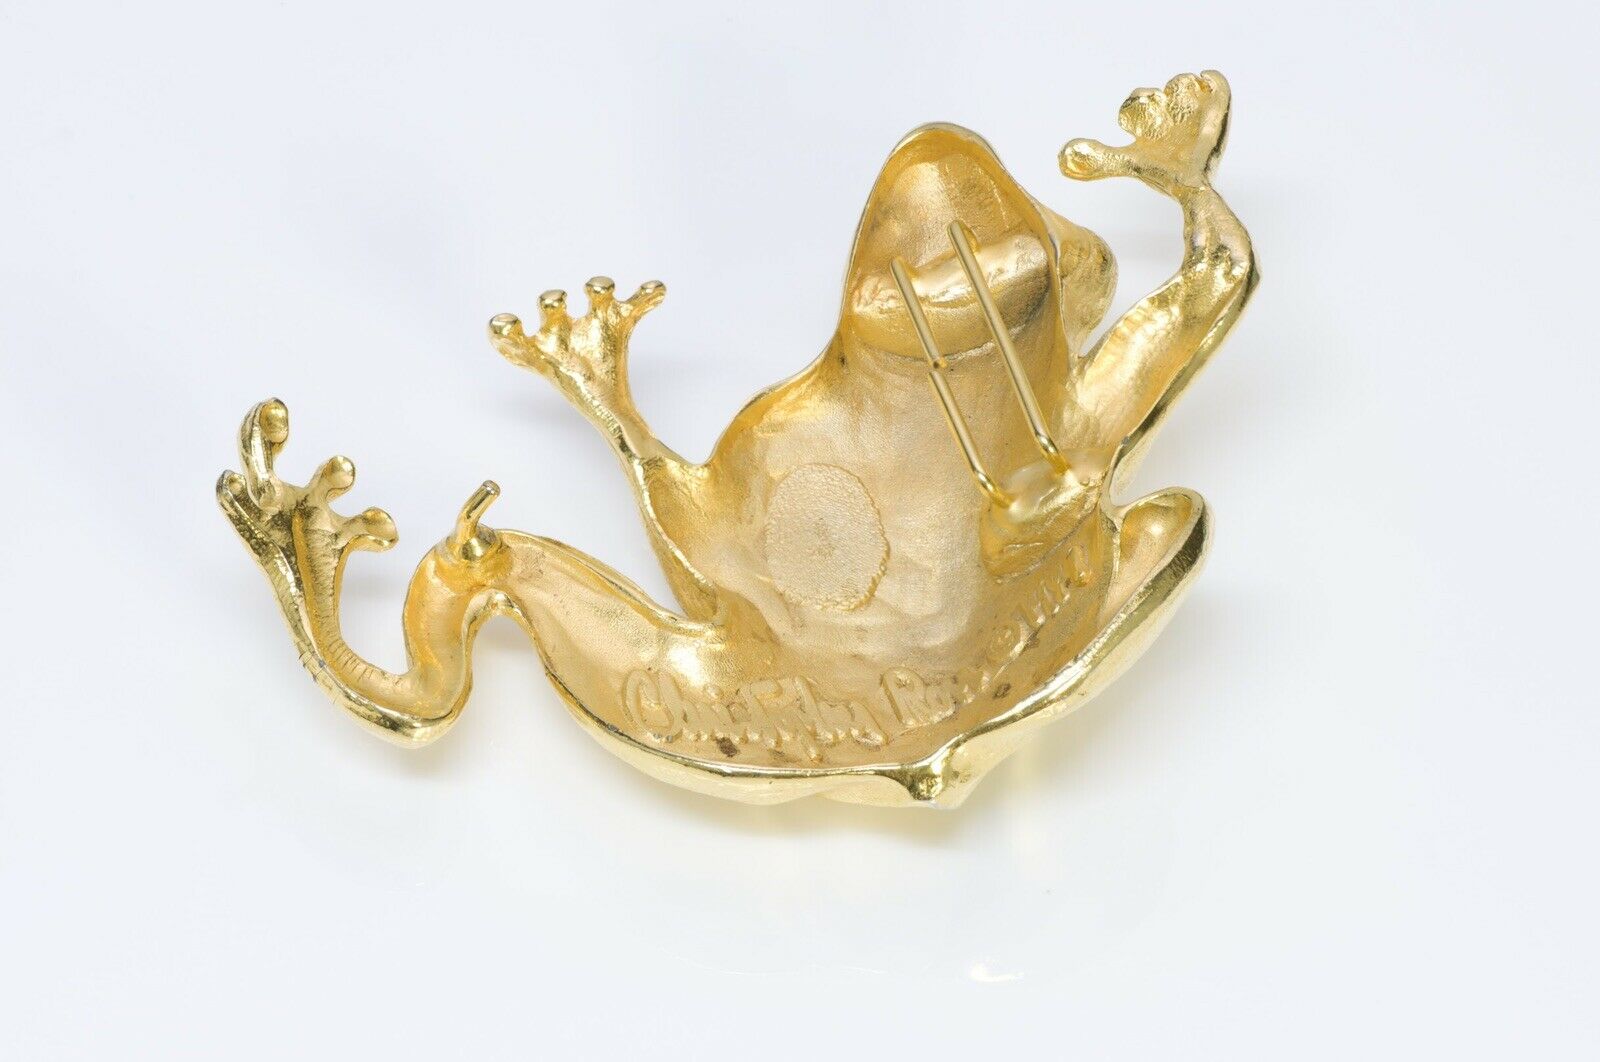 Christopher Ross 24k Gold Plated Large Frog Belt Buckle